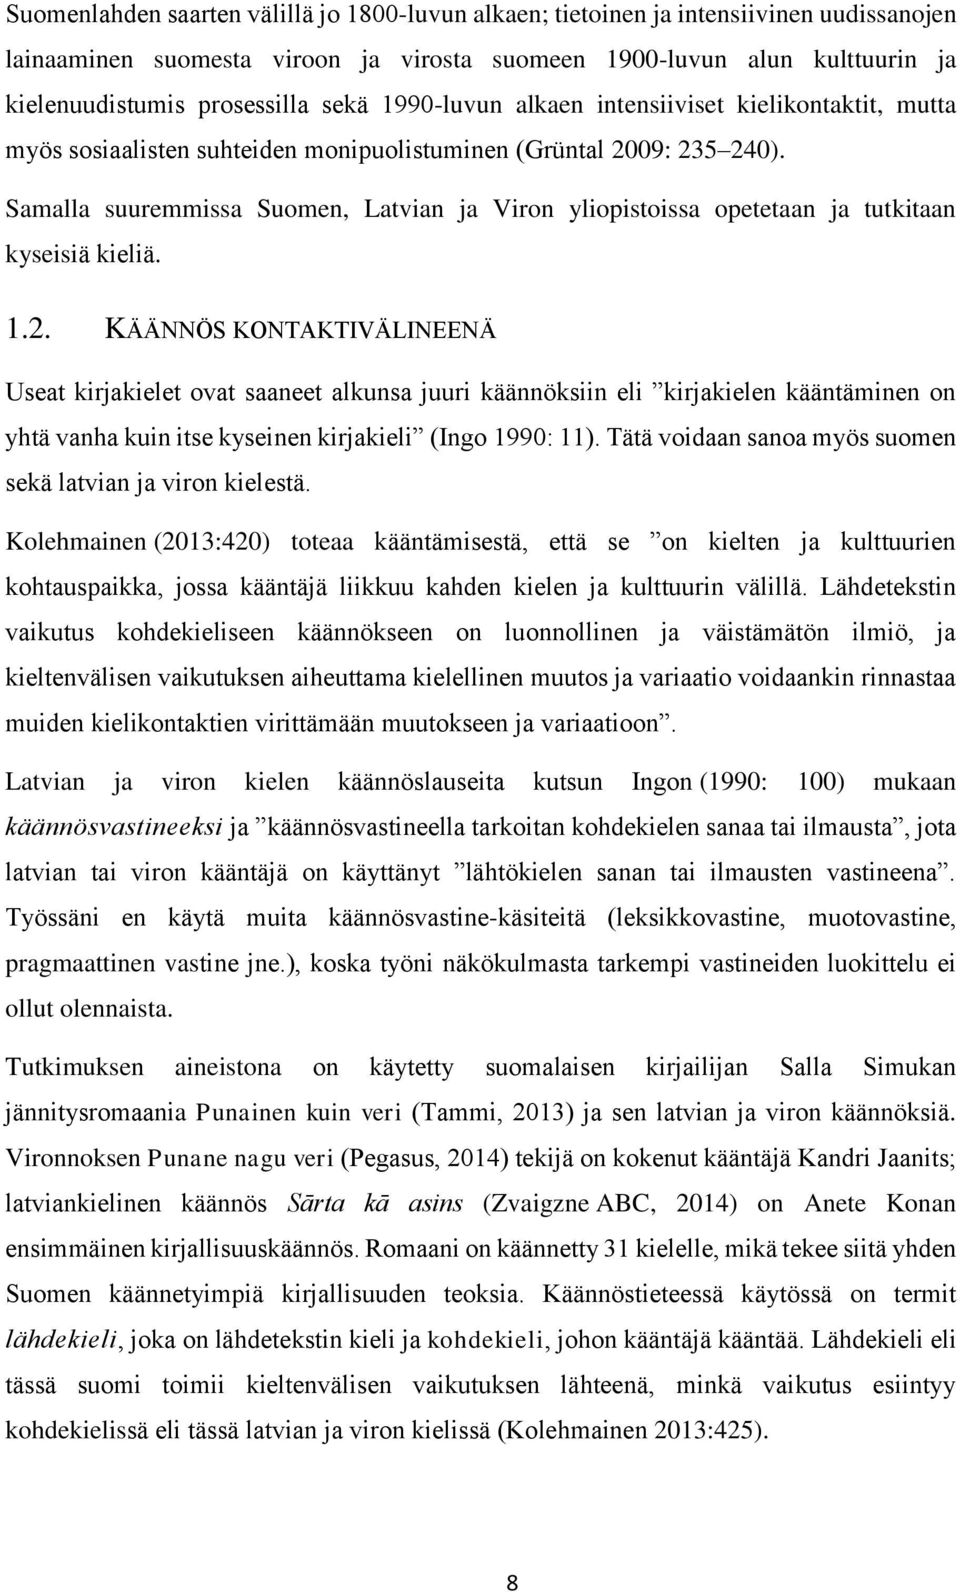 Samalla suuremmissa Suomen, Latvian ja Viron yliopistoissa opetetaan ja tutkitaan kyseisiä kieliä. 1.2.